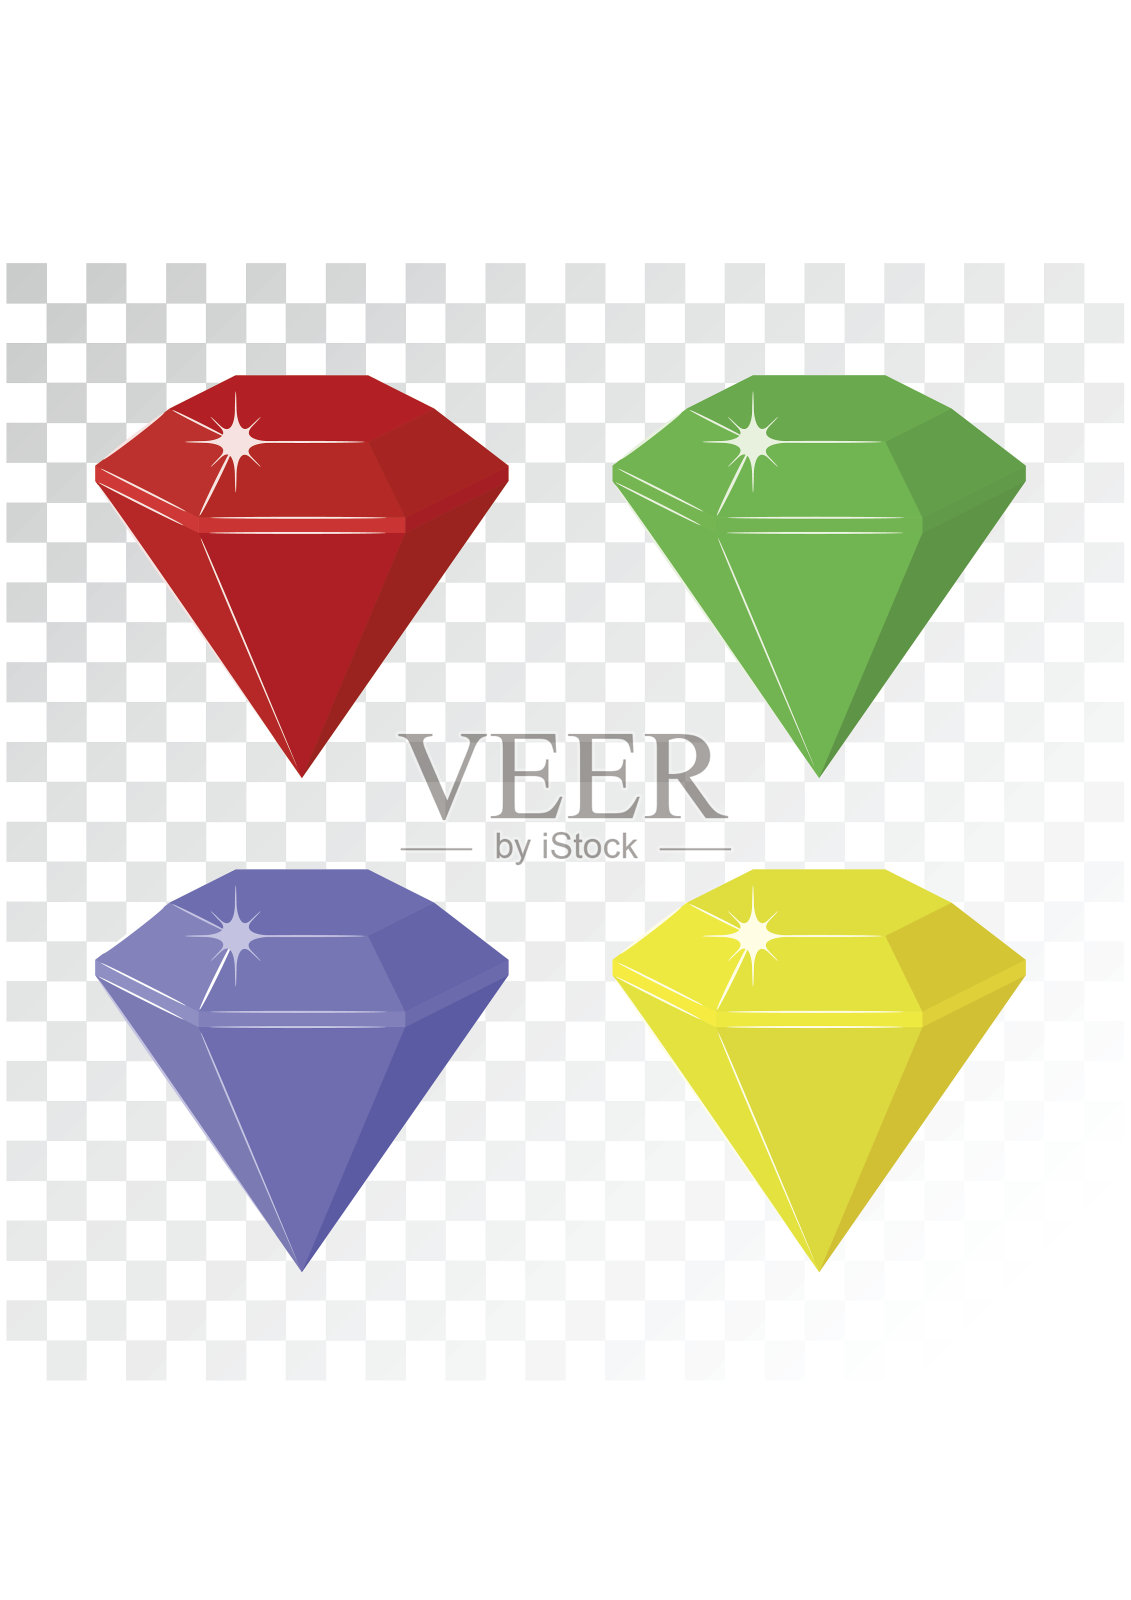 宝石和钻石图标设置在不同的颜色插画图片素材